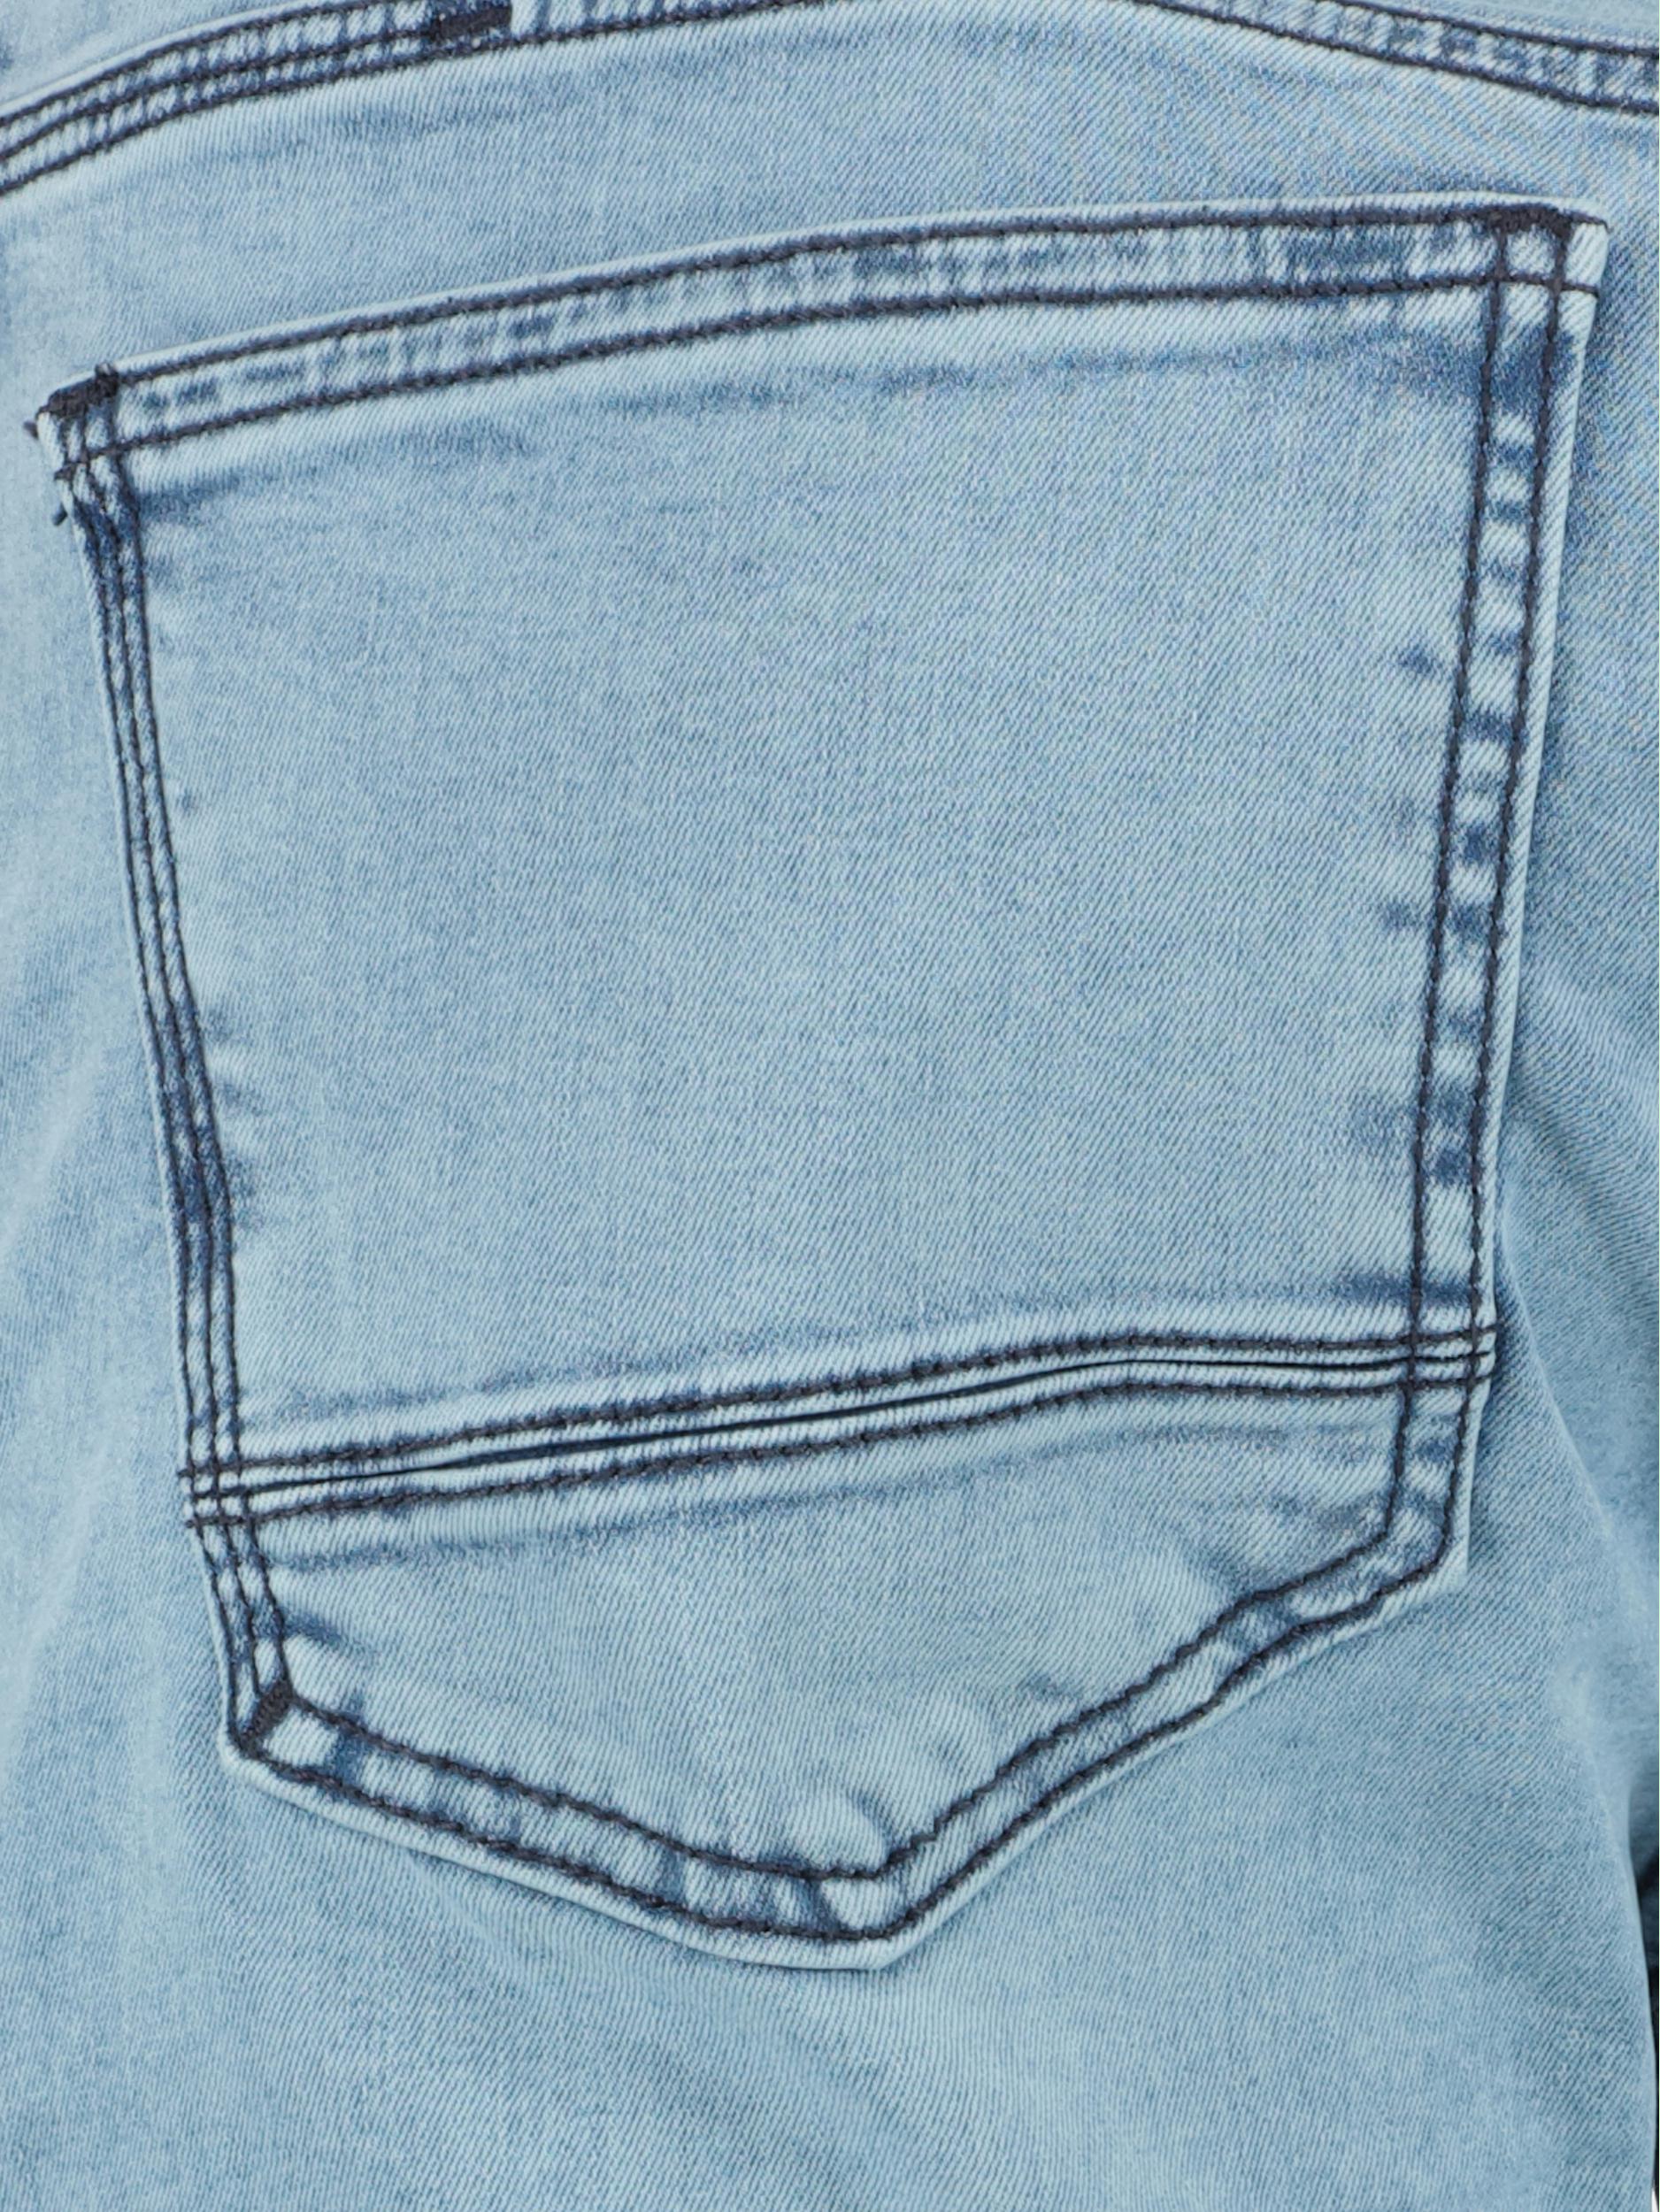 Pierre Cardin 5-Pocket Jeans Blauw  C7 35530.8070/6847